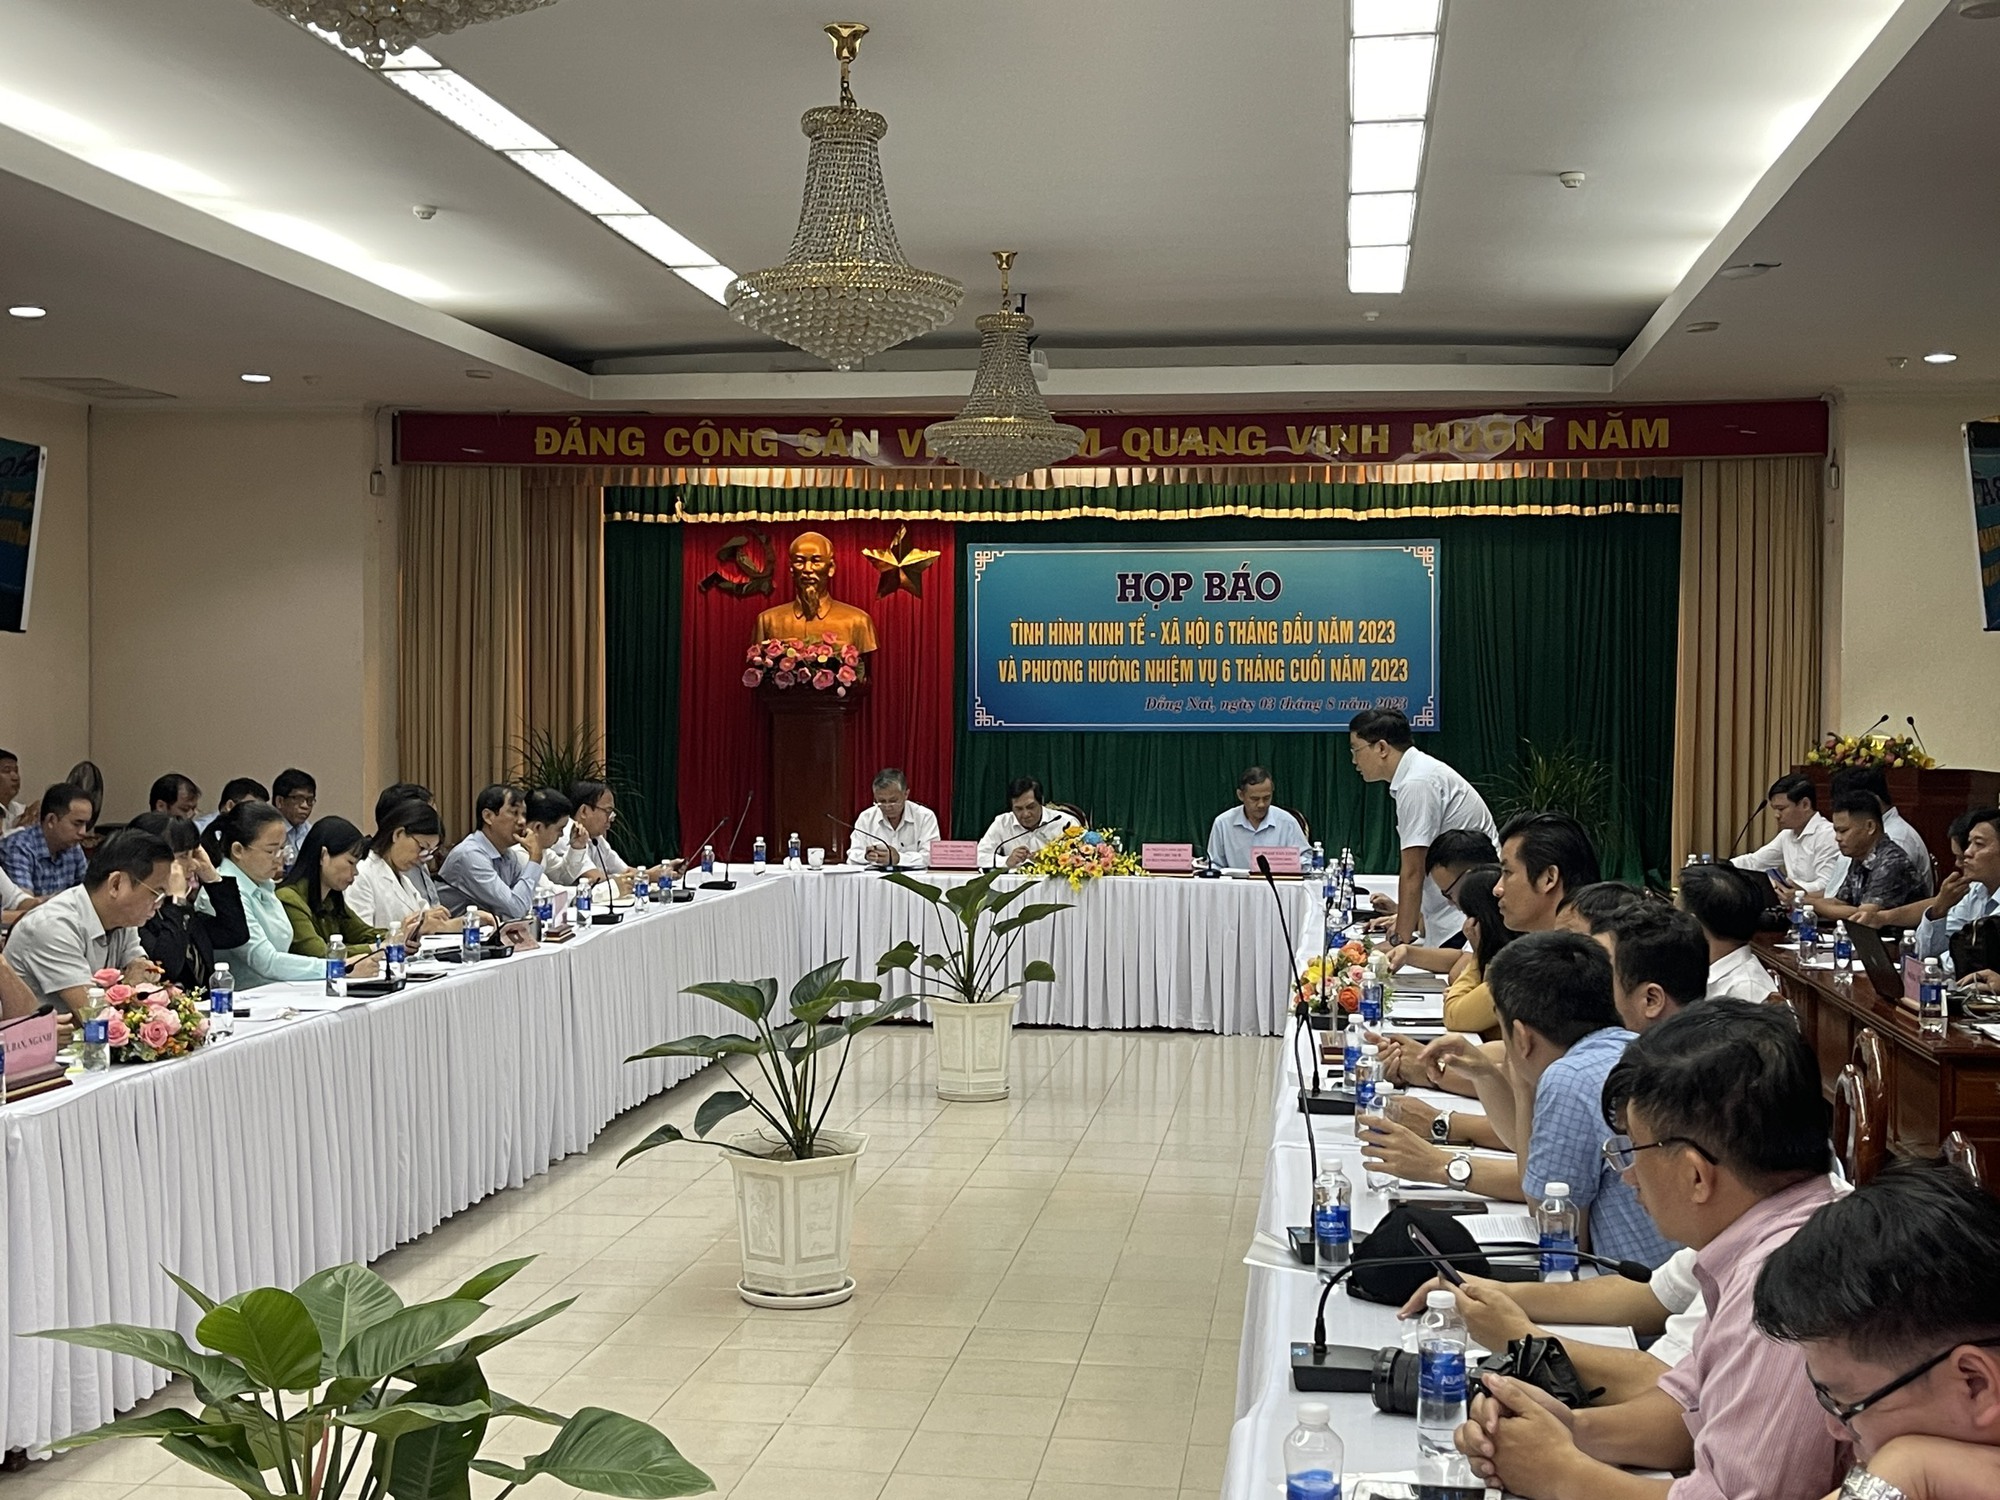 Hoạt động sản xuất các doanh nghiệp trên địa bàn tỉnh Đồng Nai tiếp tục gắp khó  - Ảnh 3.